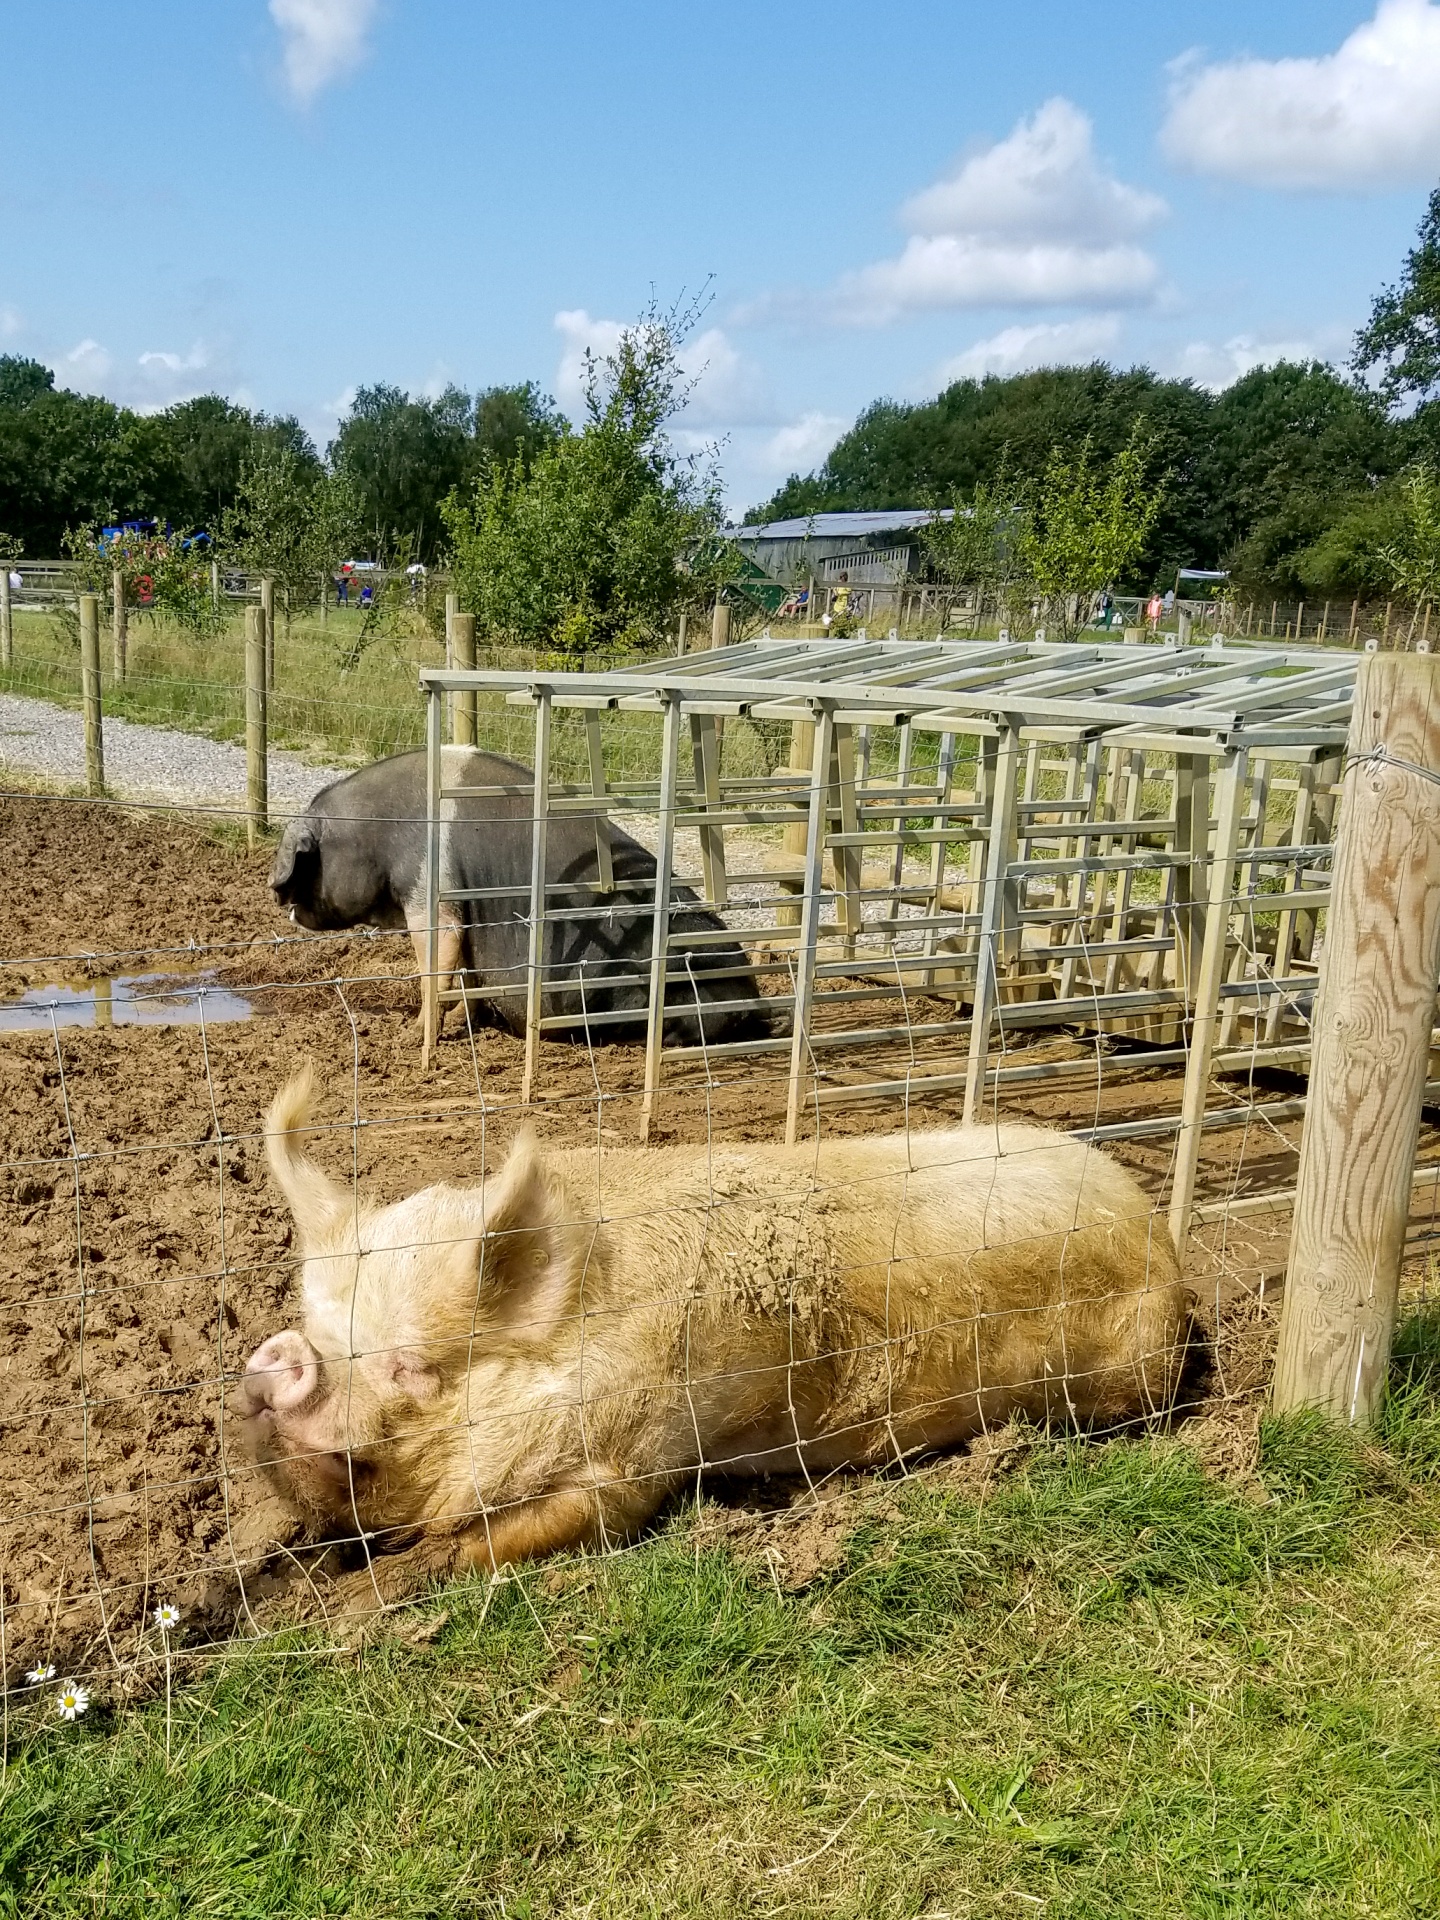 Pig On A Farm